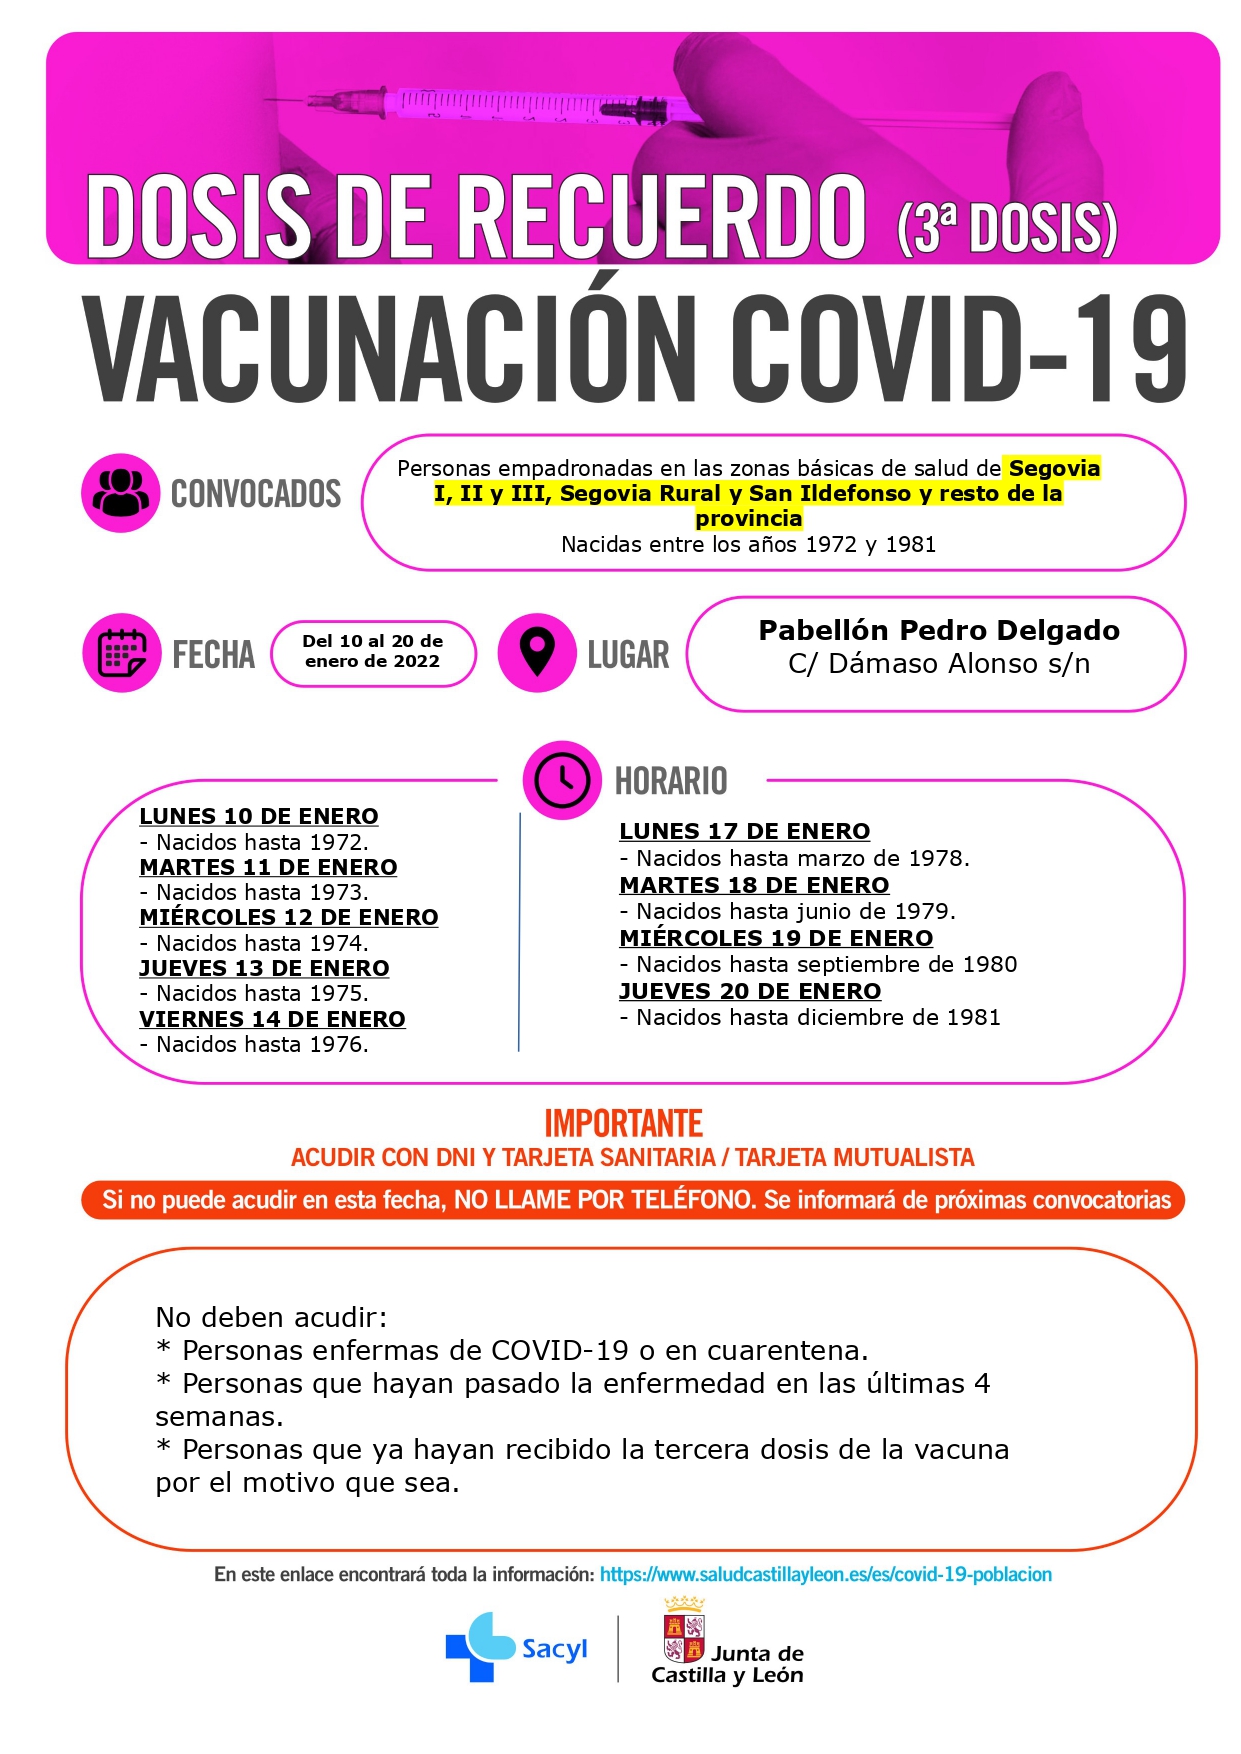 Vacunación Covid19 Segovia (1972-1981) 3ª dosis recuerdo